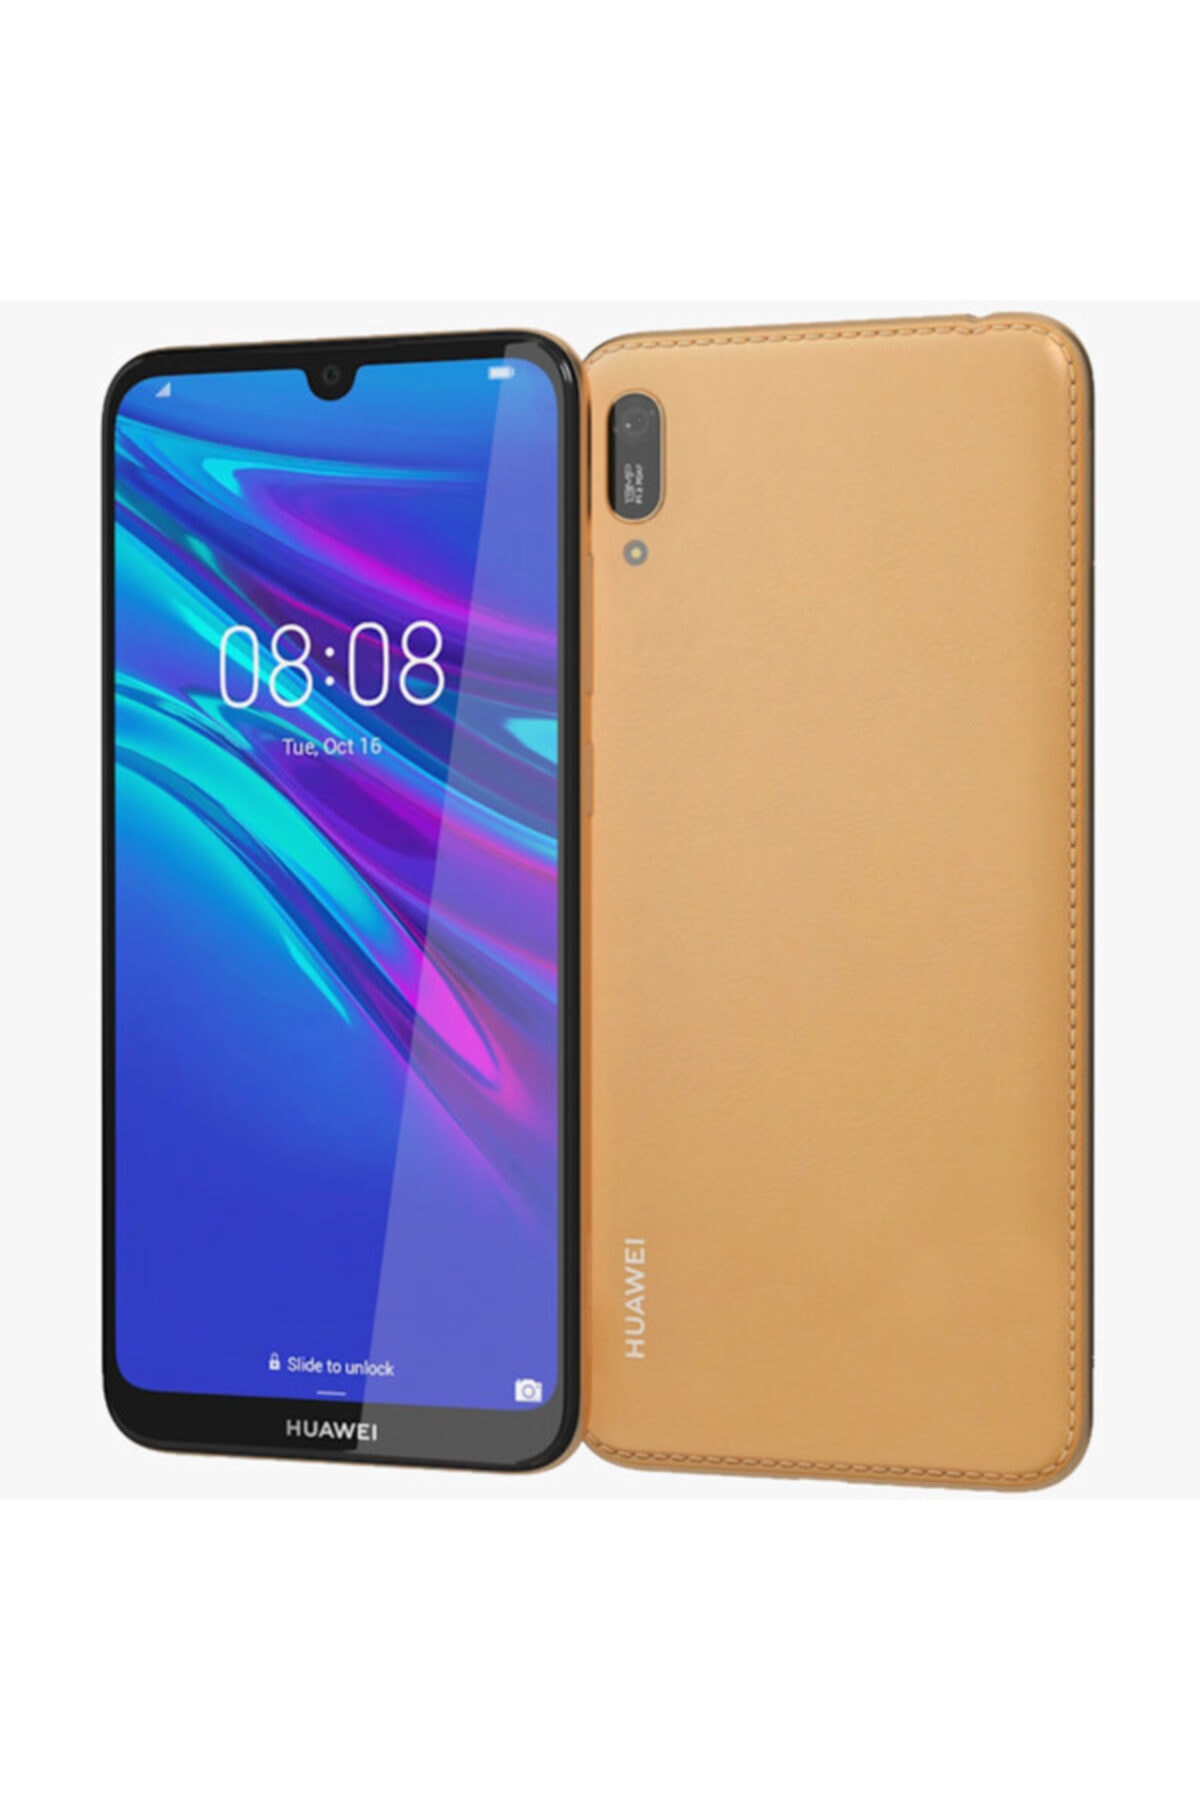 kalıt Aşmak Mecburiyet  Huawei Y6 2019 2gb+32gb Kahverengi Cep Telefonu (ithalatçı Garantili)  Fiyatı, Yorumları - TRENDYOL